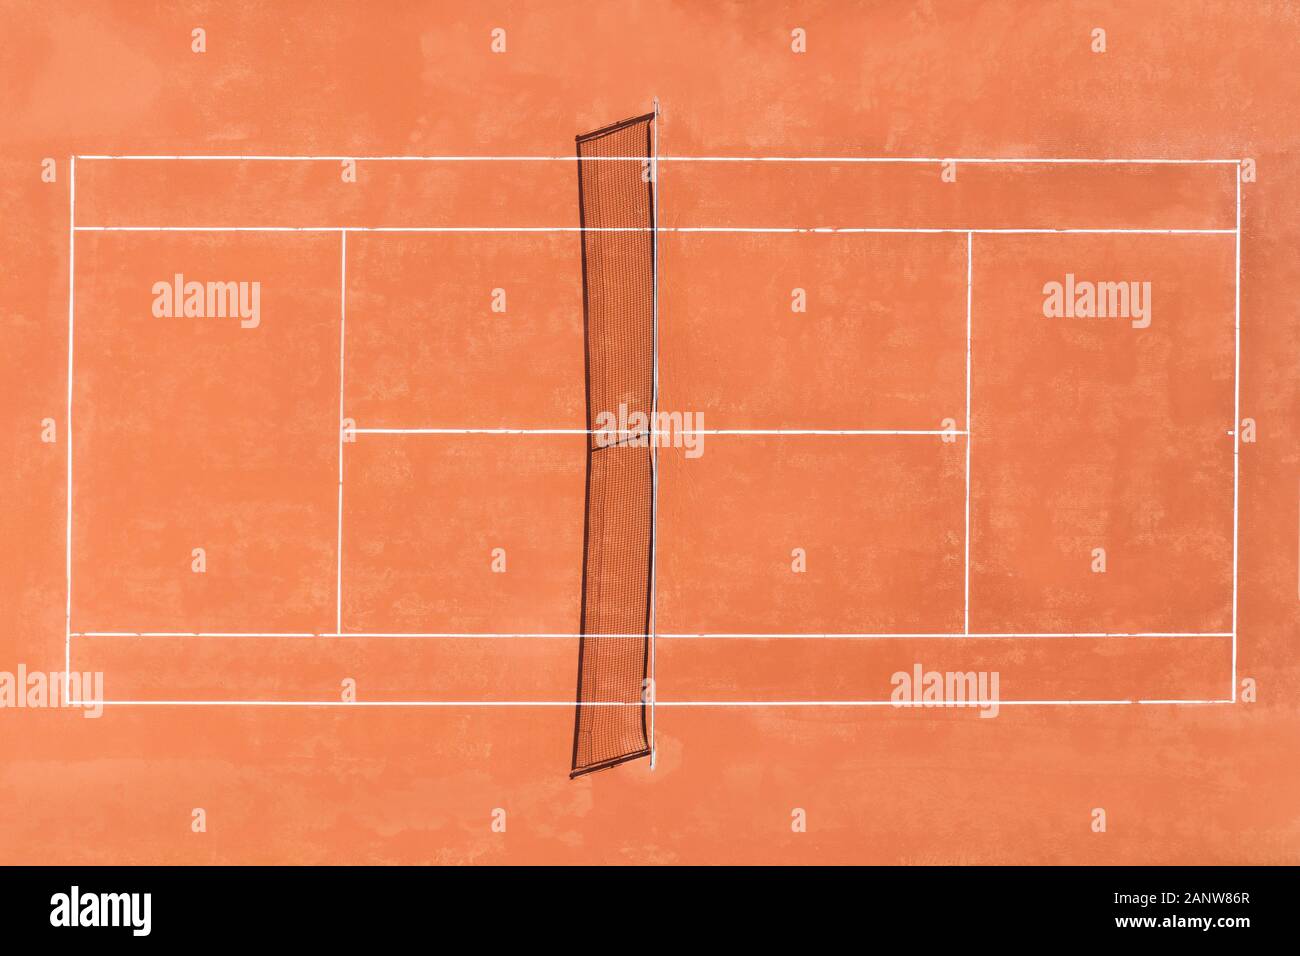 Vue aérienne d'un prfessional cour d'argile rouge, prêt à jouer au tennis Banque D'Images